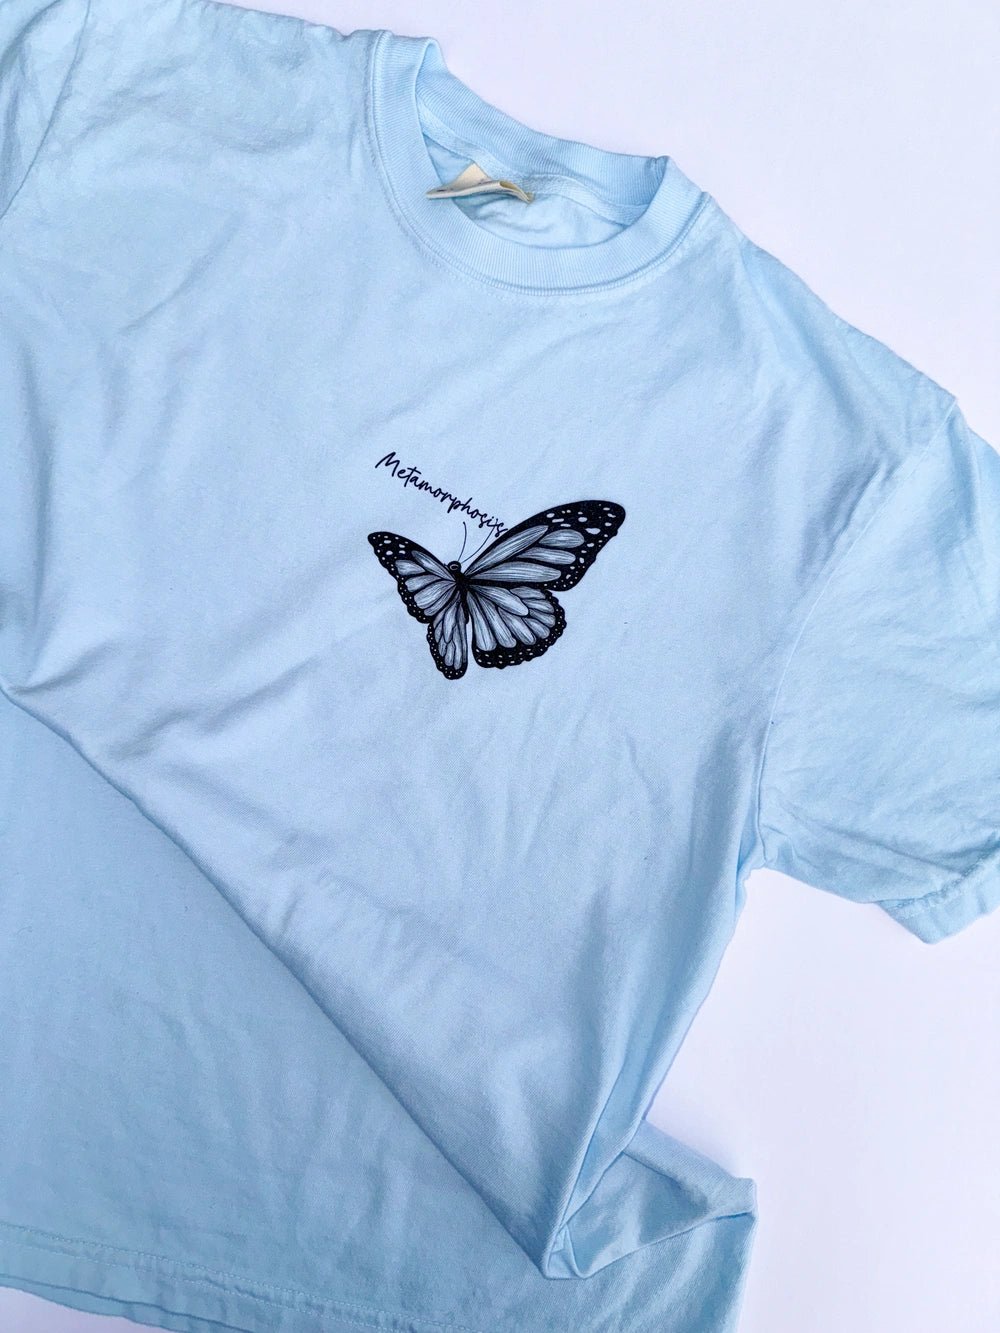 Metamorphosis Butterfly Vintage Styled Shirt - T-Shirt JOY'S | Custom Air Force 1 Sneakers